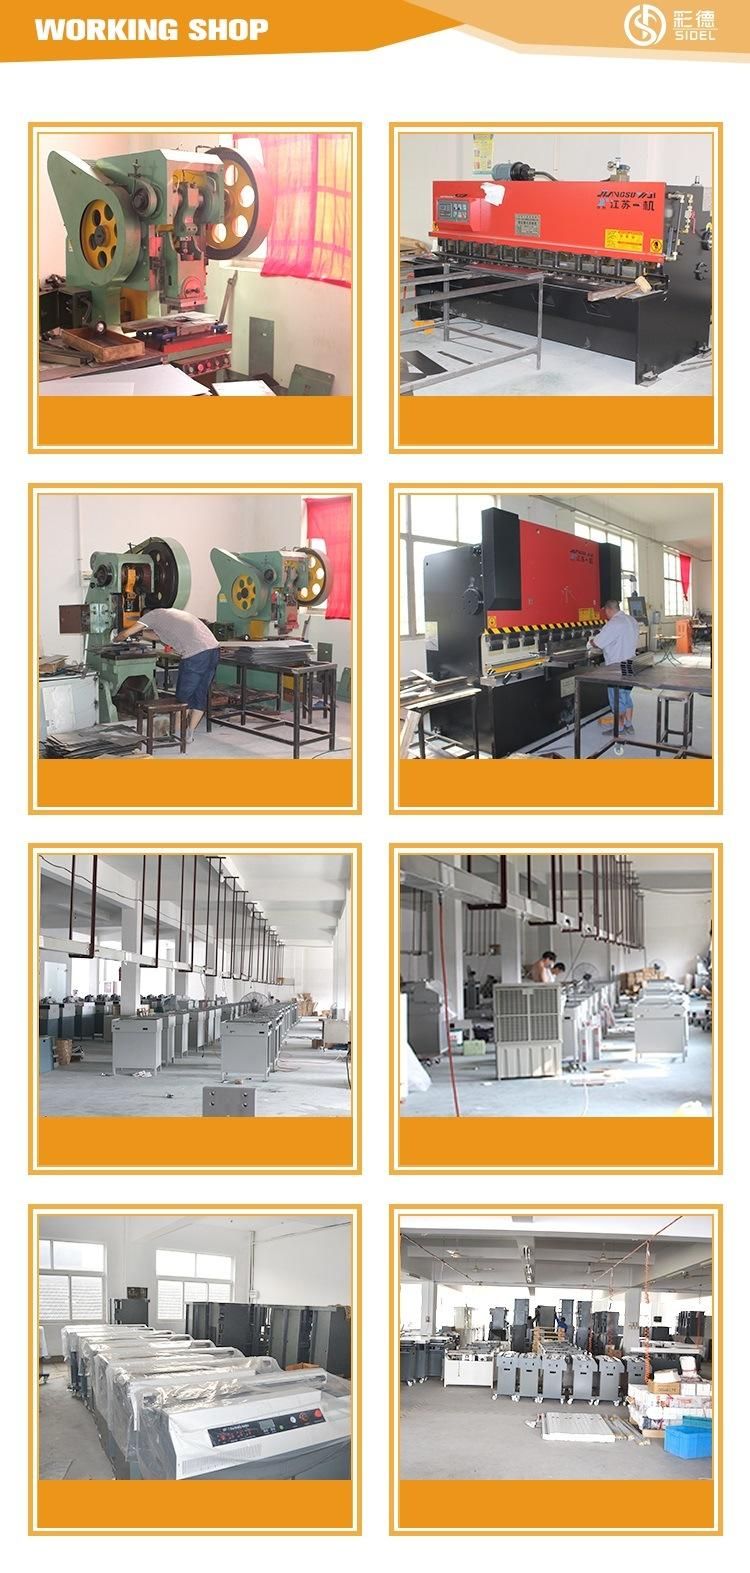 Professional Manufacturer (WD-5610L) Program-Control Hydraulic Paper Cutting Machine